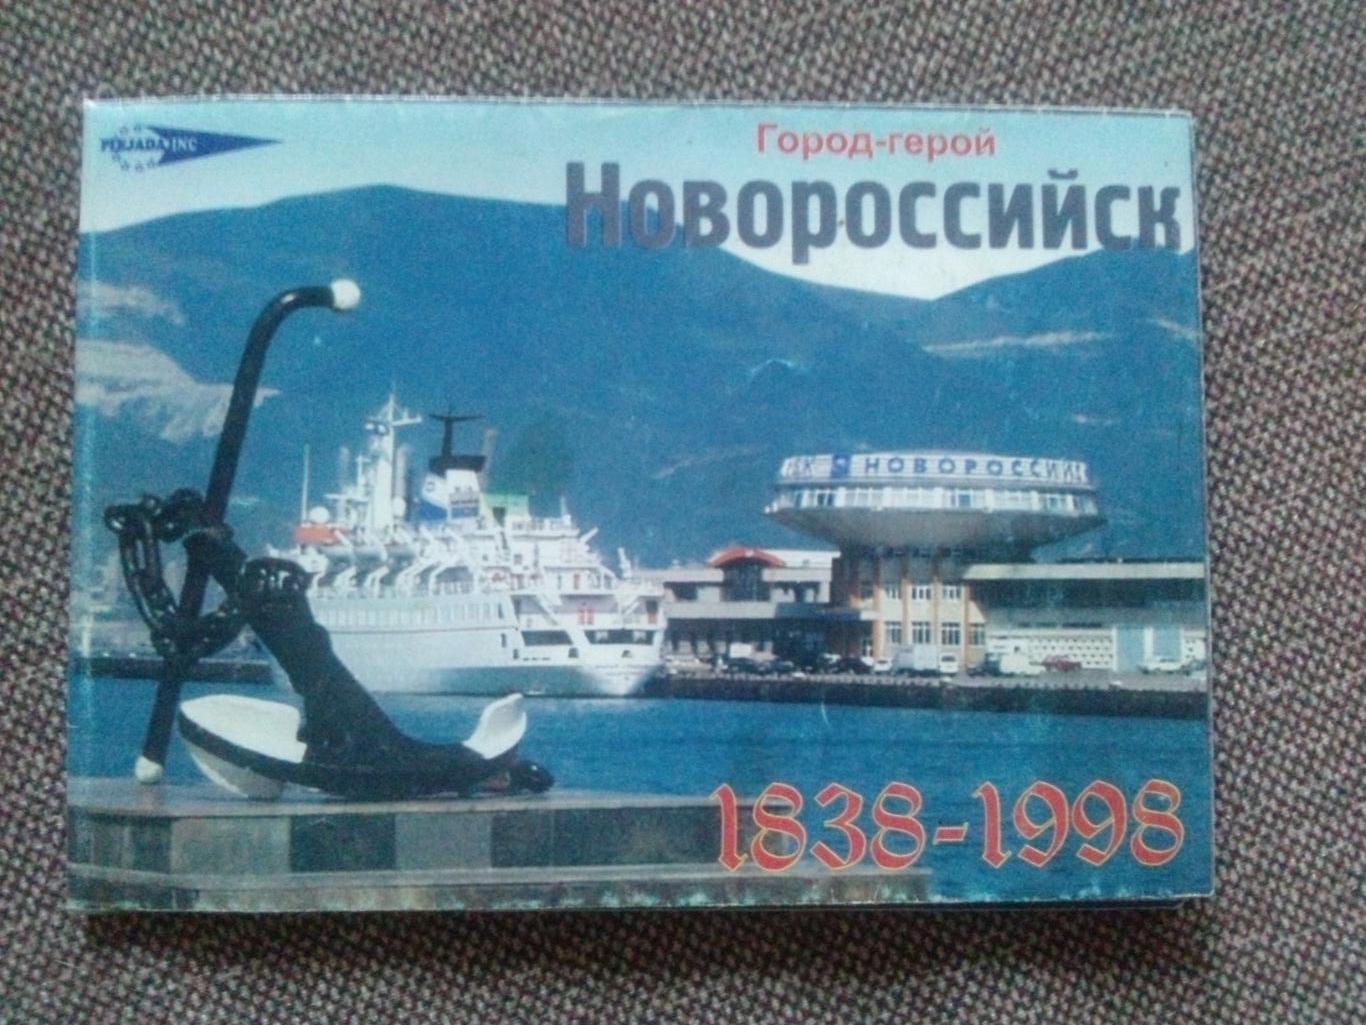 Карта (туристская схема) : Новороссийск (1838-1998 гг.) Черноморское побережье